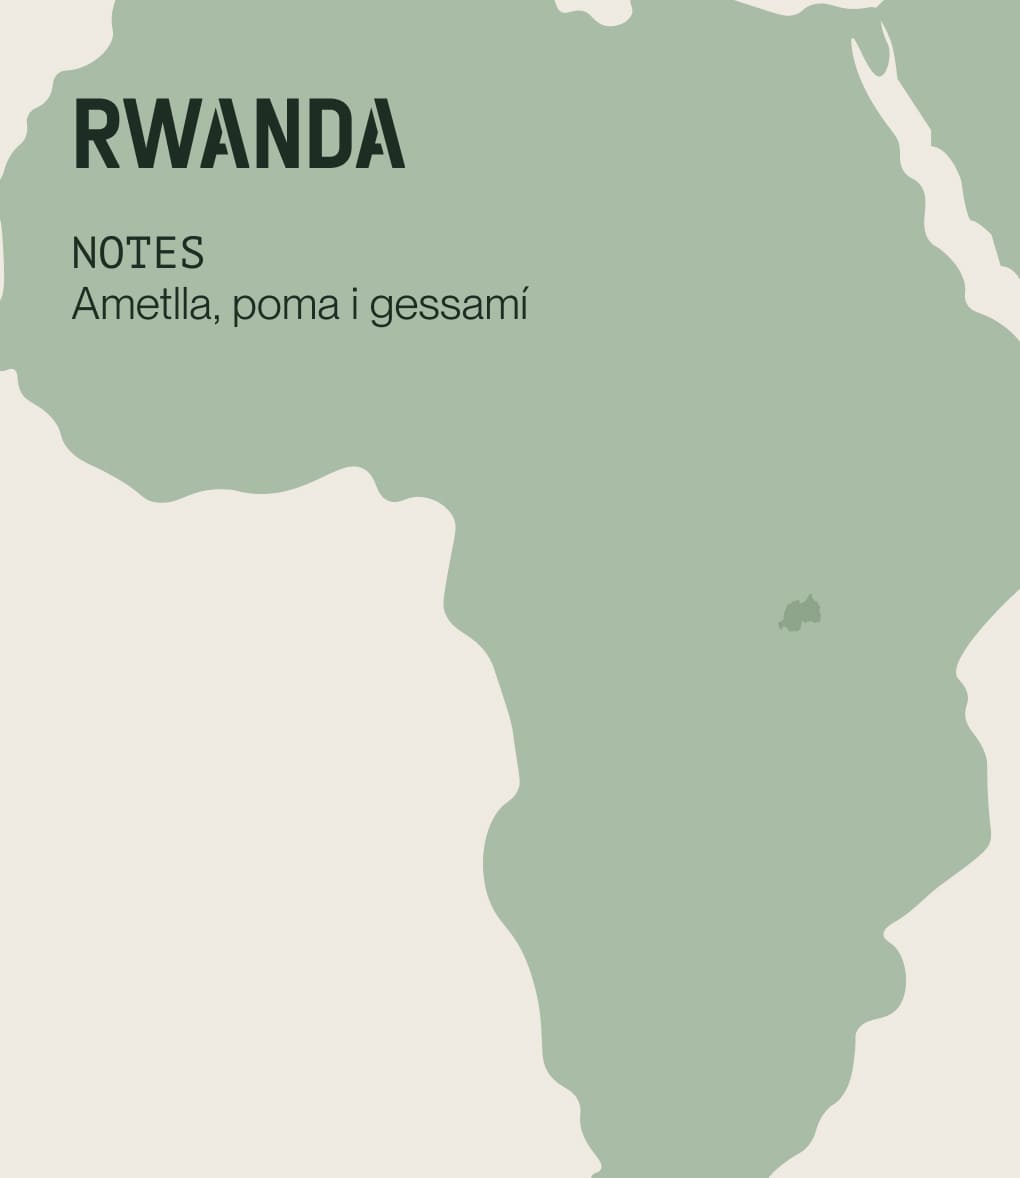 Notes de cata de cafè d'especialitat d'origen Rwanda